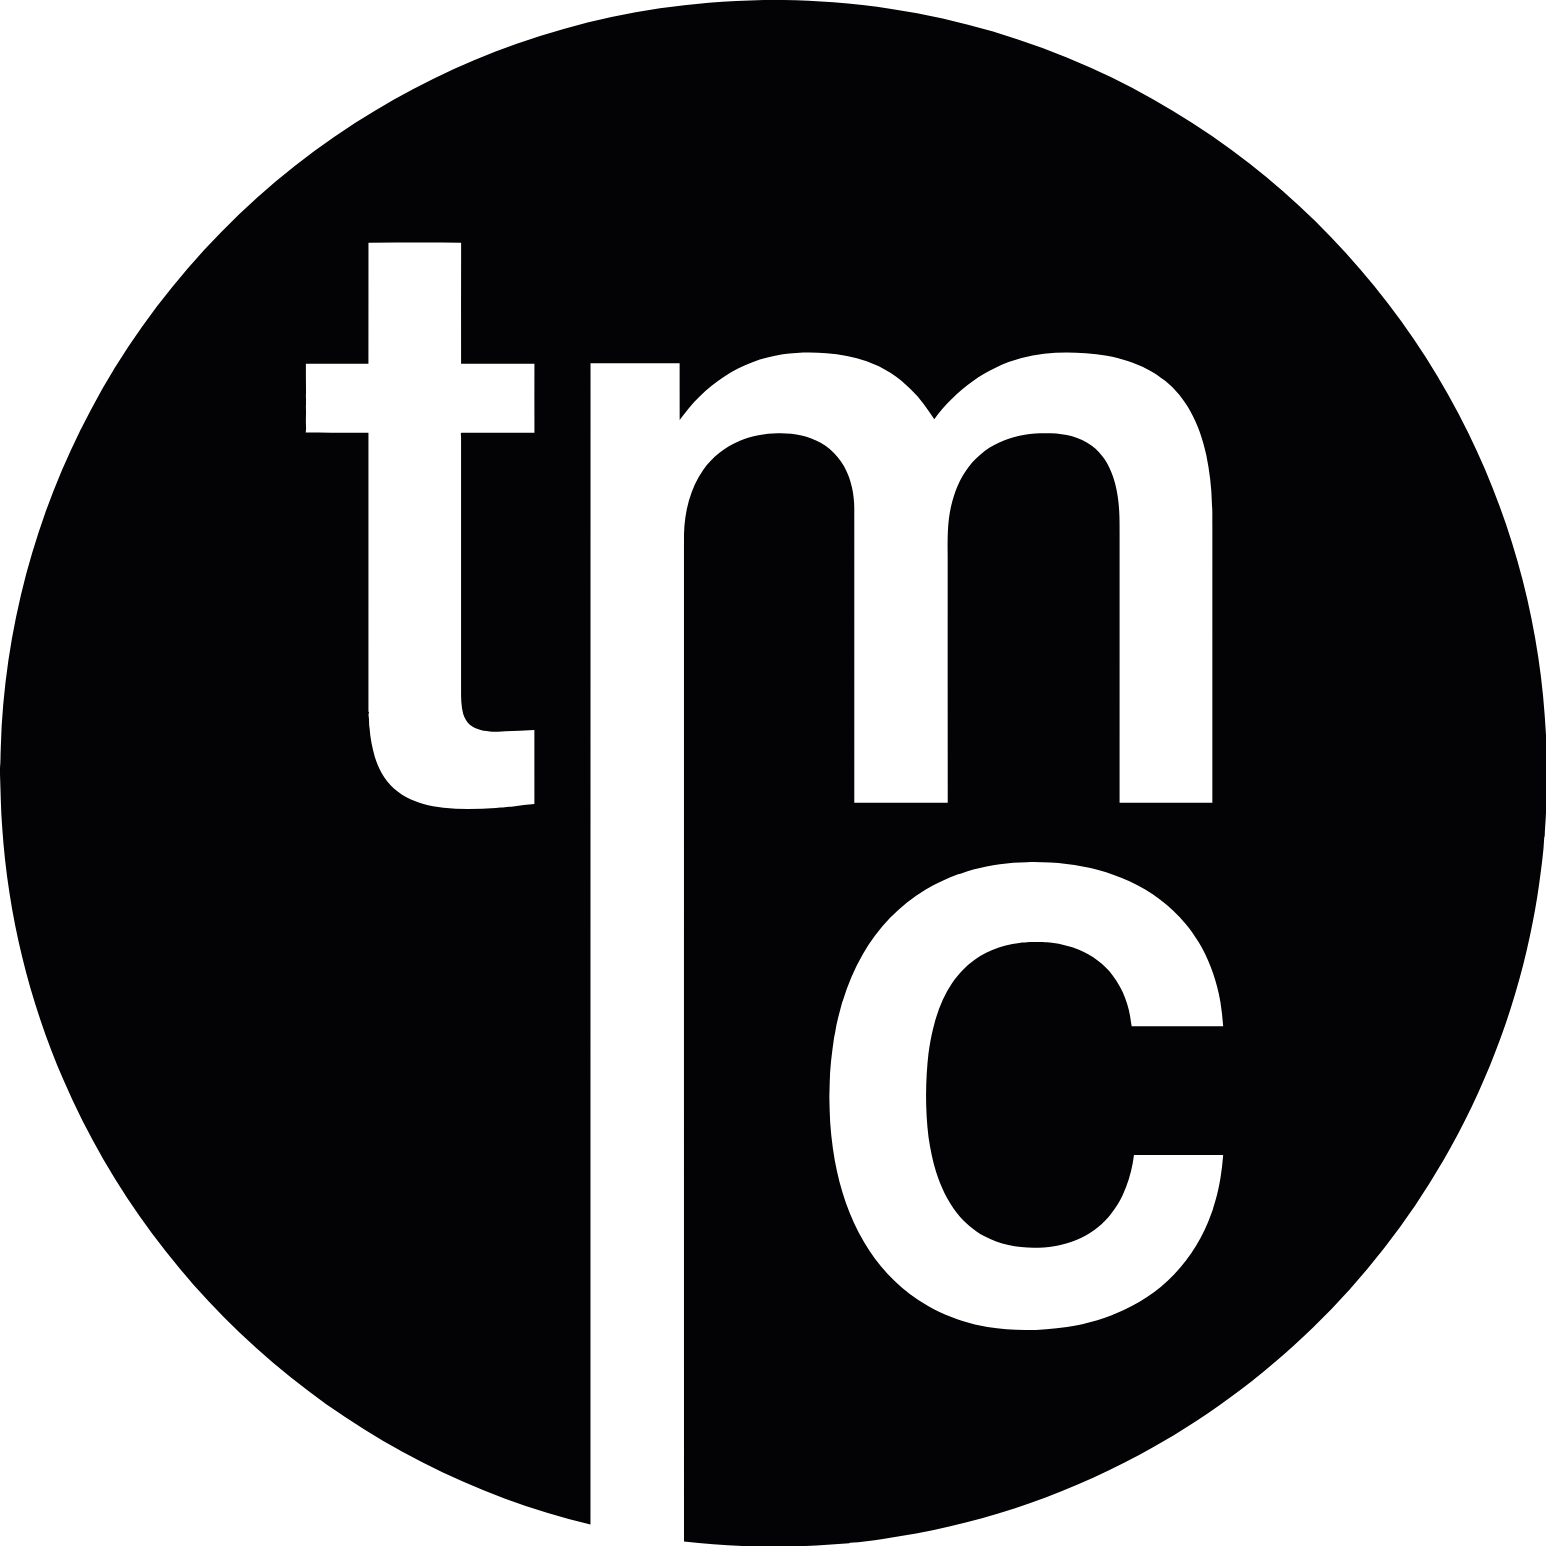 TMC new logo 2021 by AppleDroidYT on DeviantArt